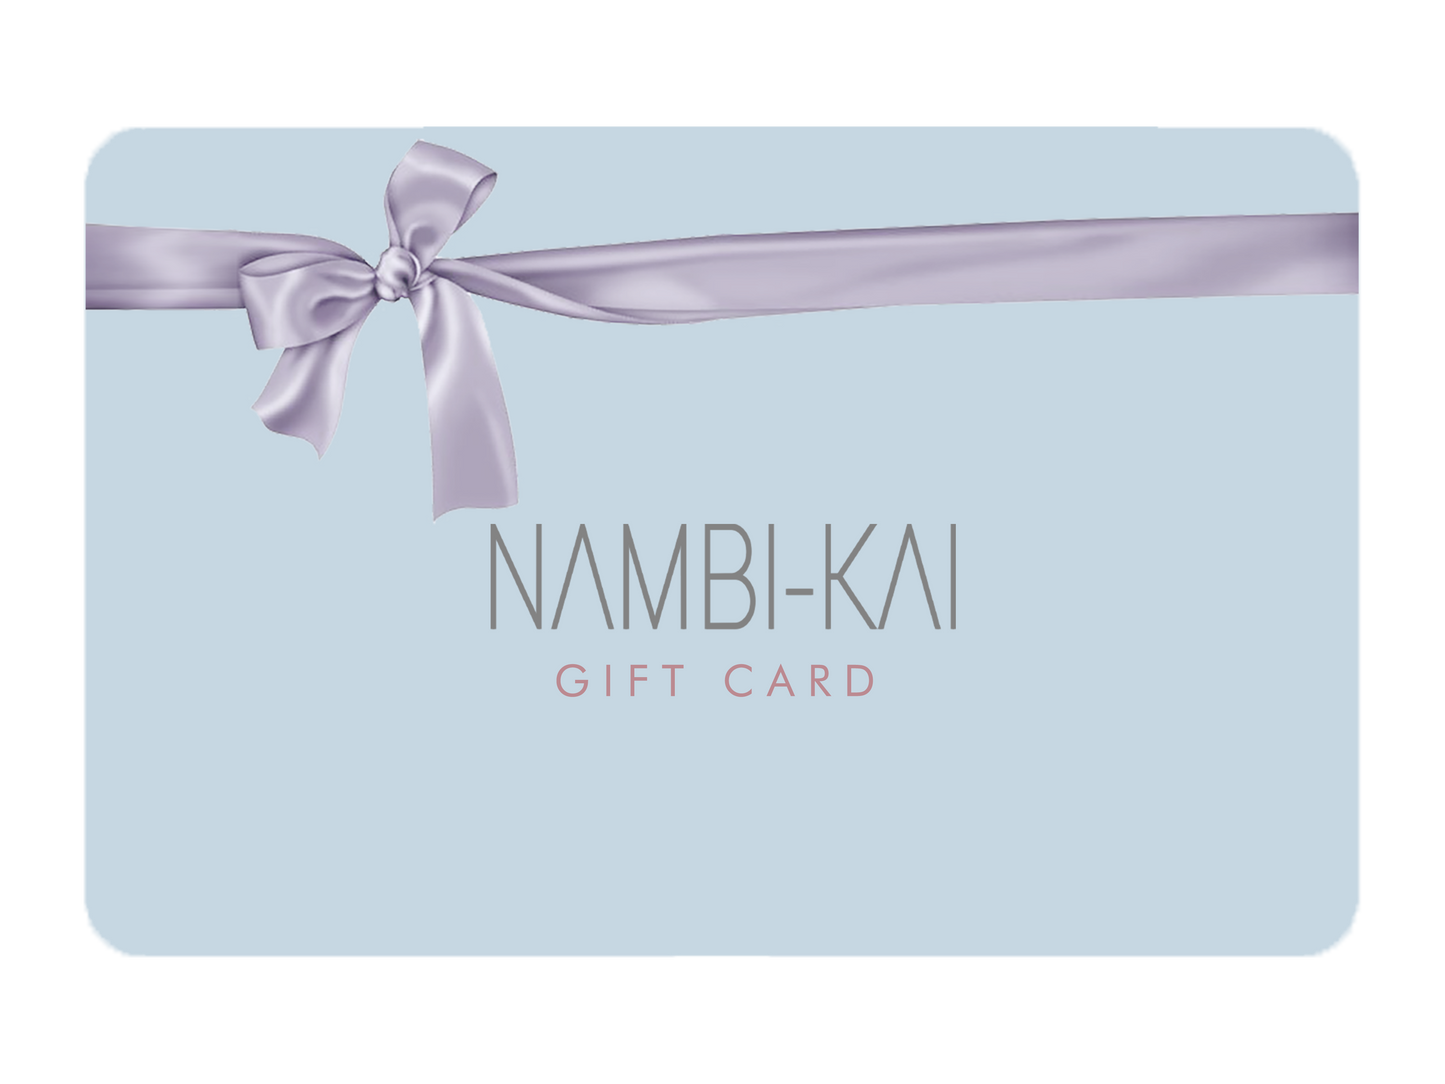 NAMBI-KAI Gift Card